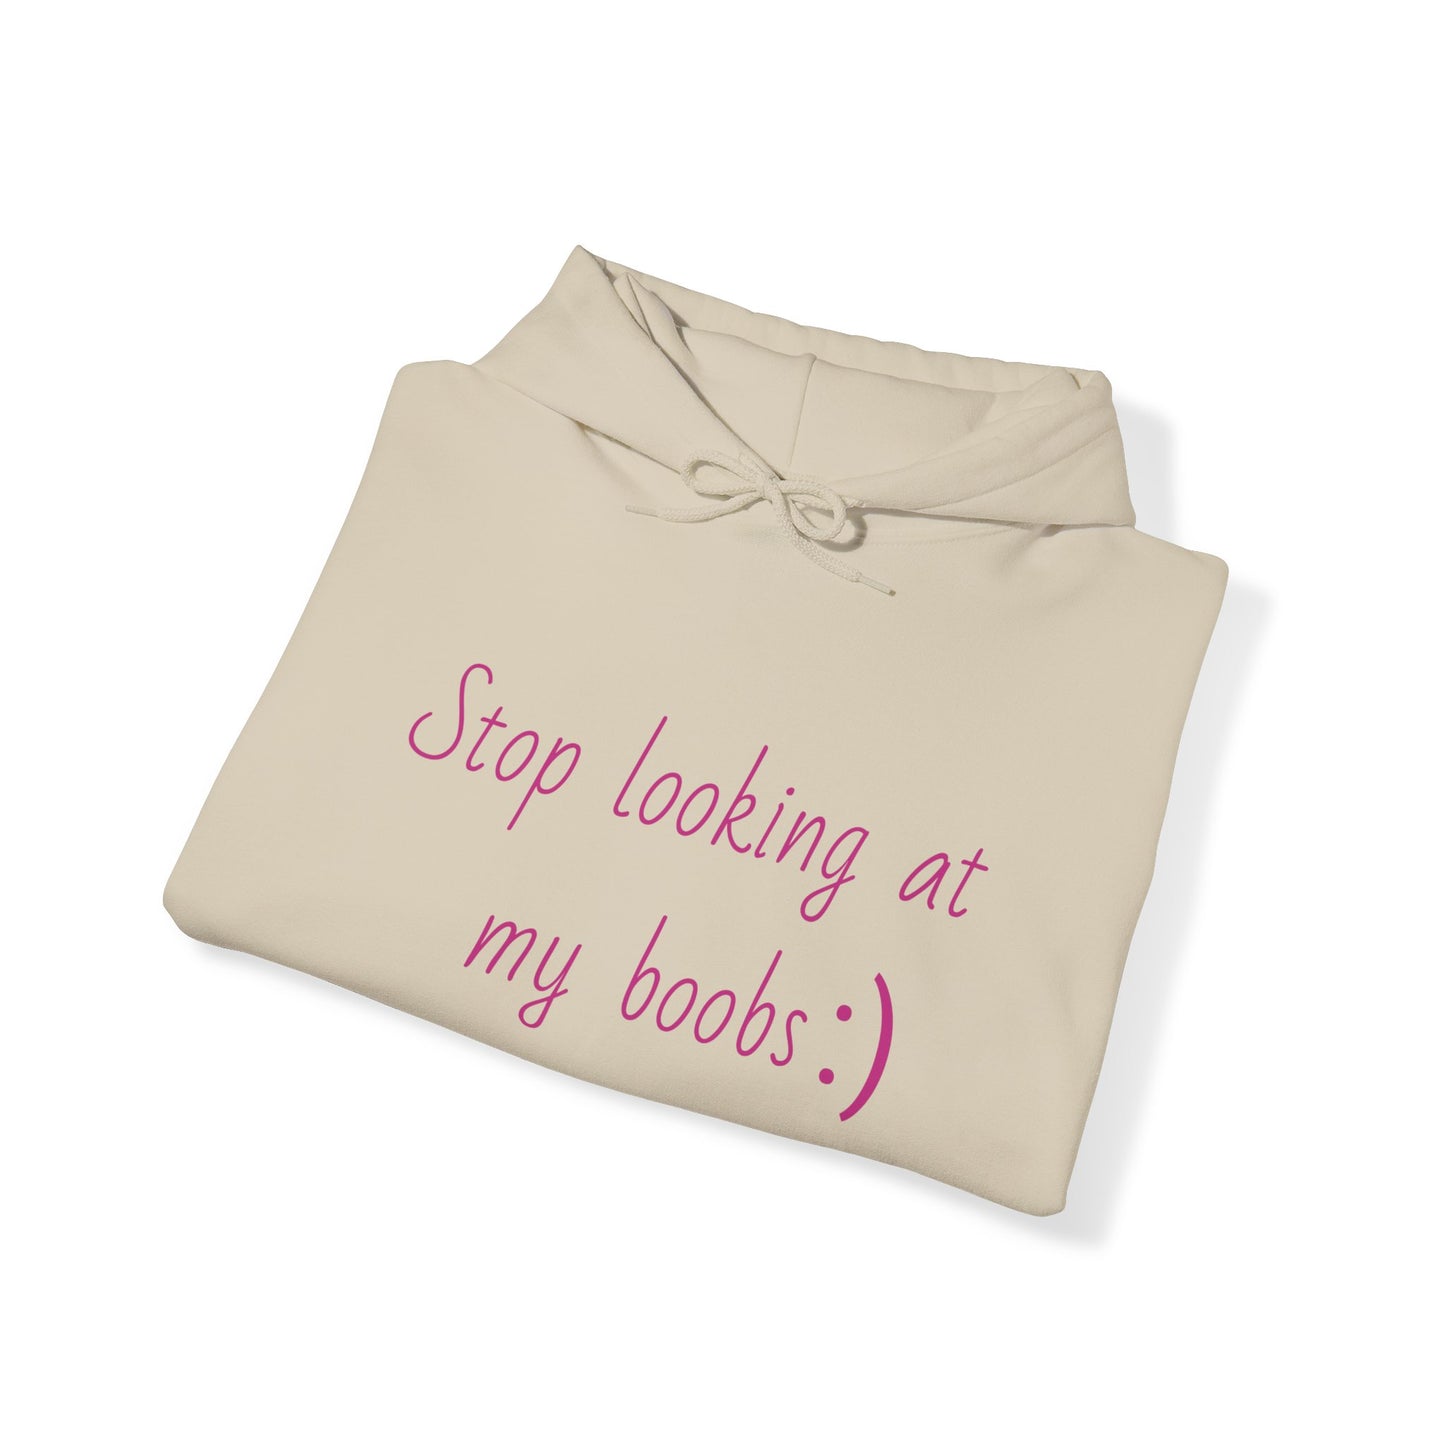 "Stop looking at my boobs :)" - Hoodie